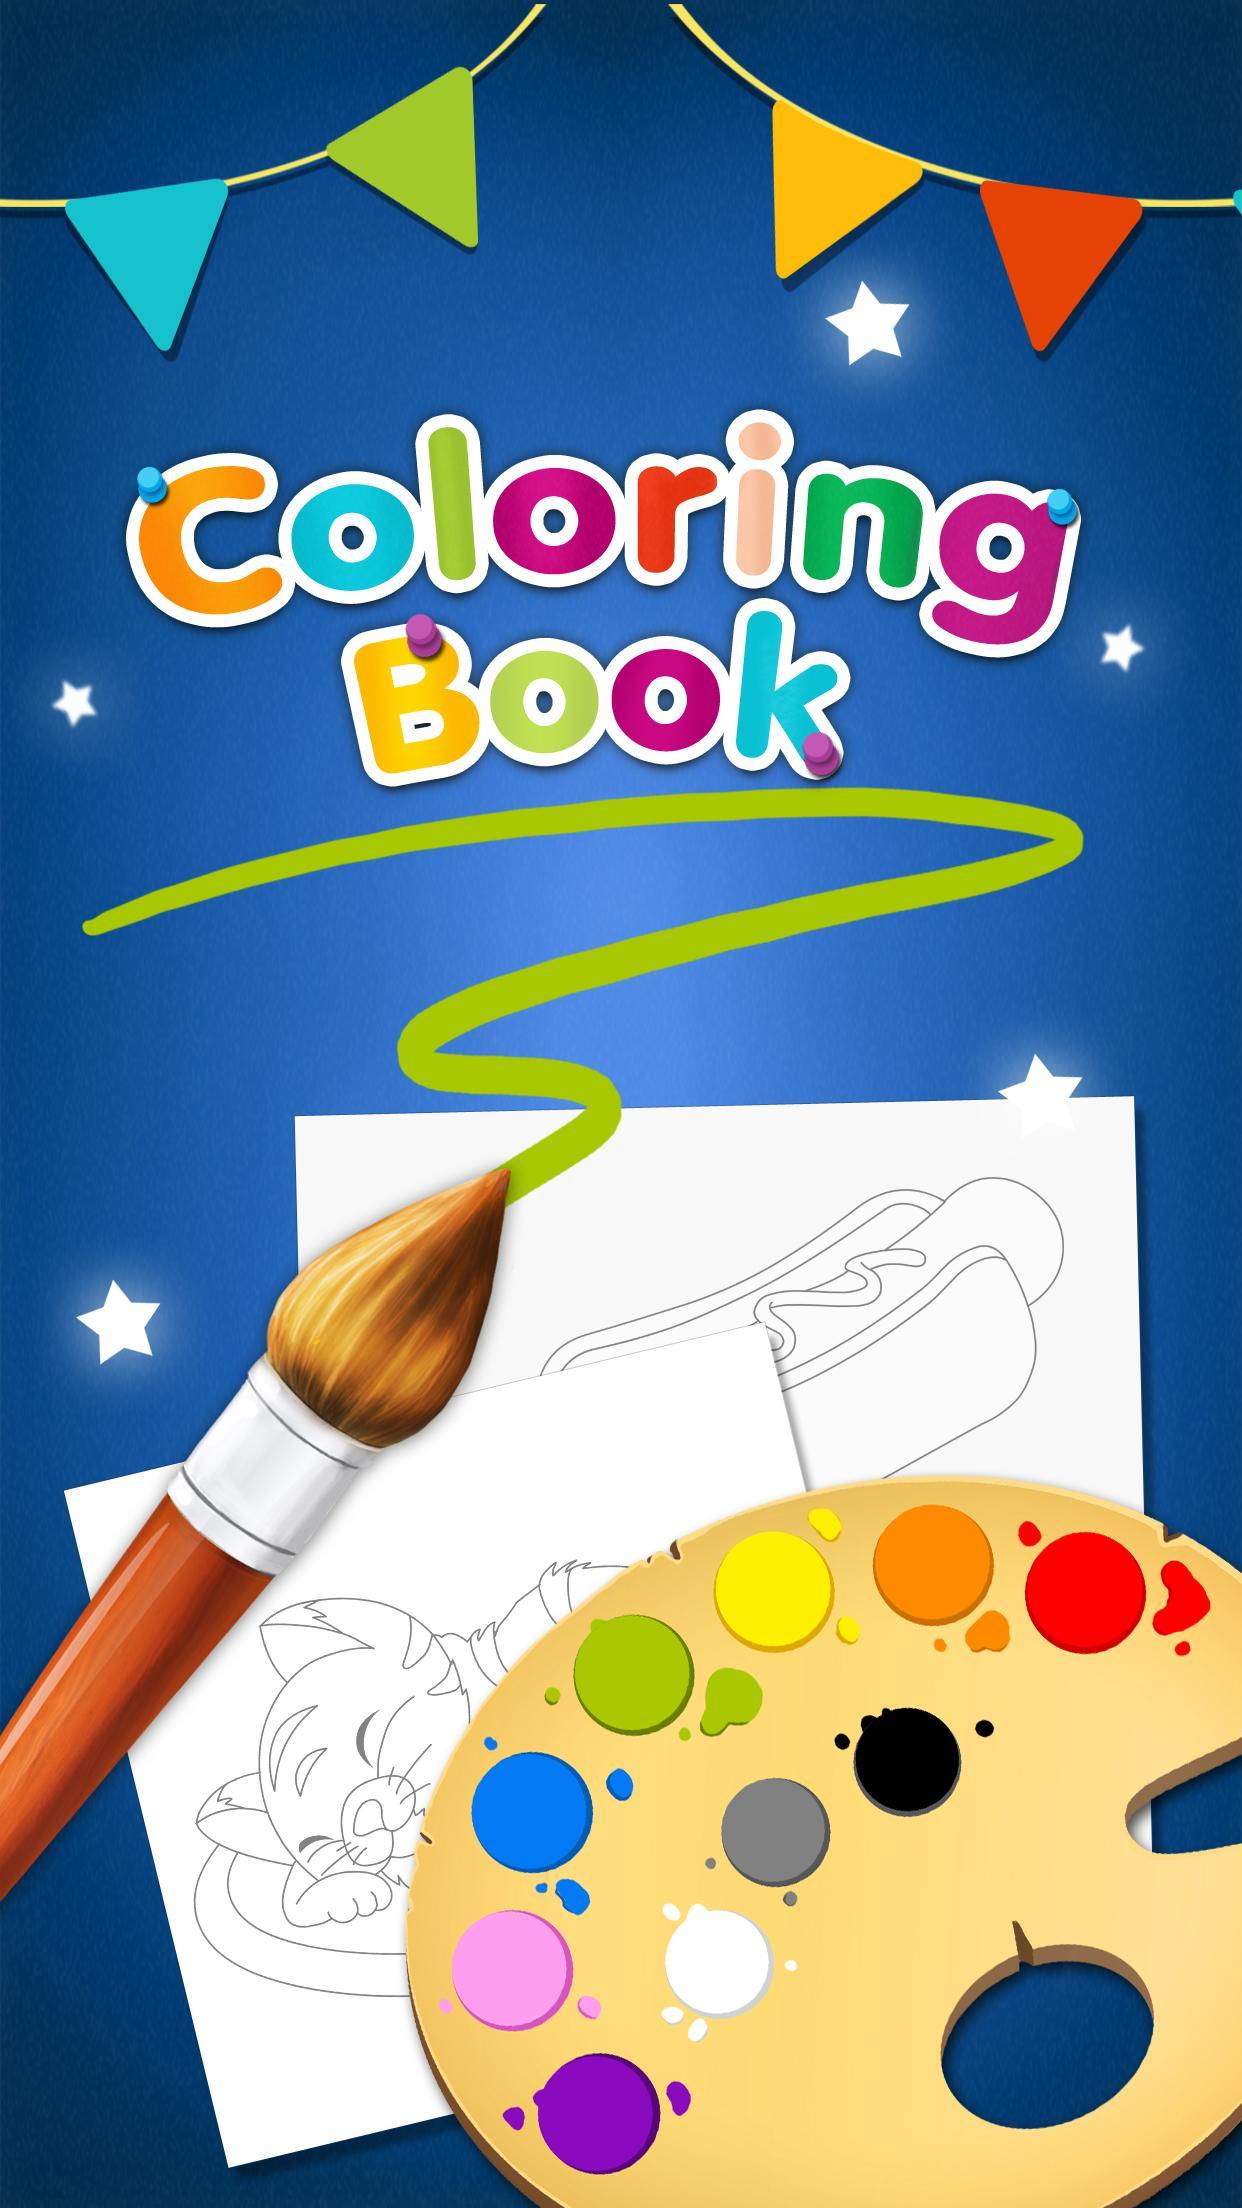 Screenshot 1 of 행복한 색상 - 색칠하기 책 1.0.3